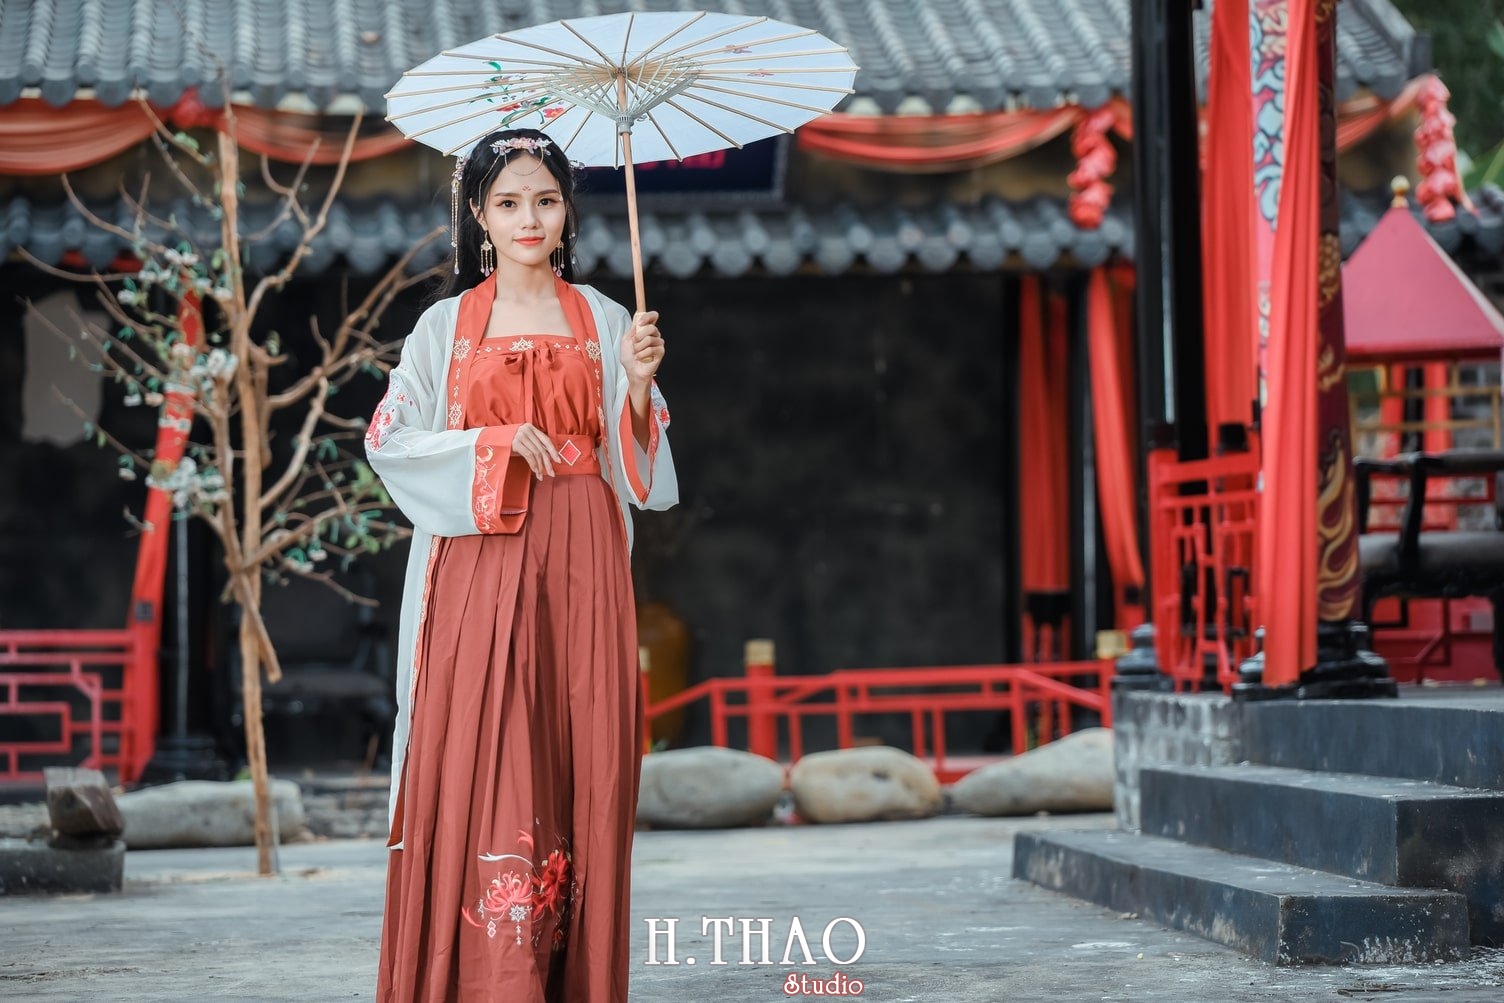 Anh tieu long nu 12 - Bộ ảnh cổ trang chụp theo concept tiểu long nữ nhẹ nhàng - HThao Studio